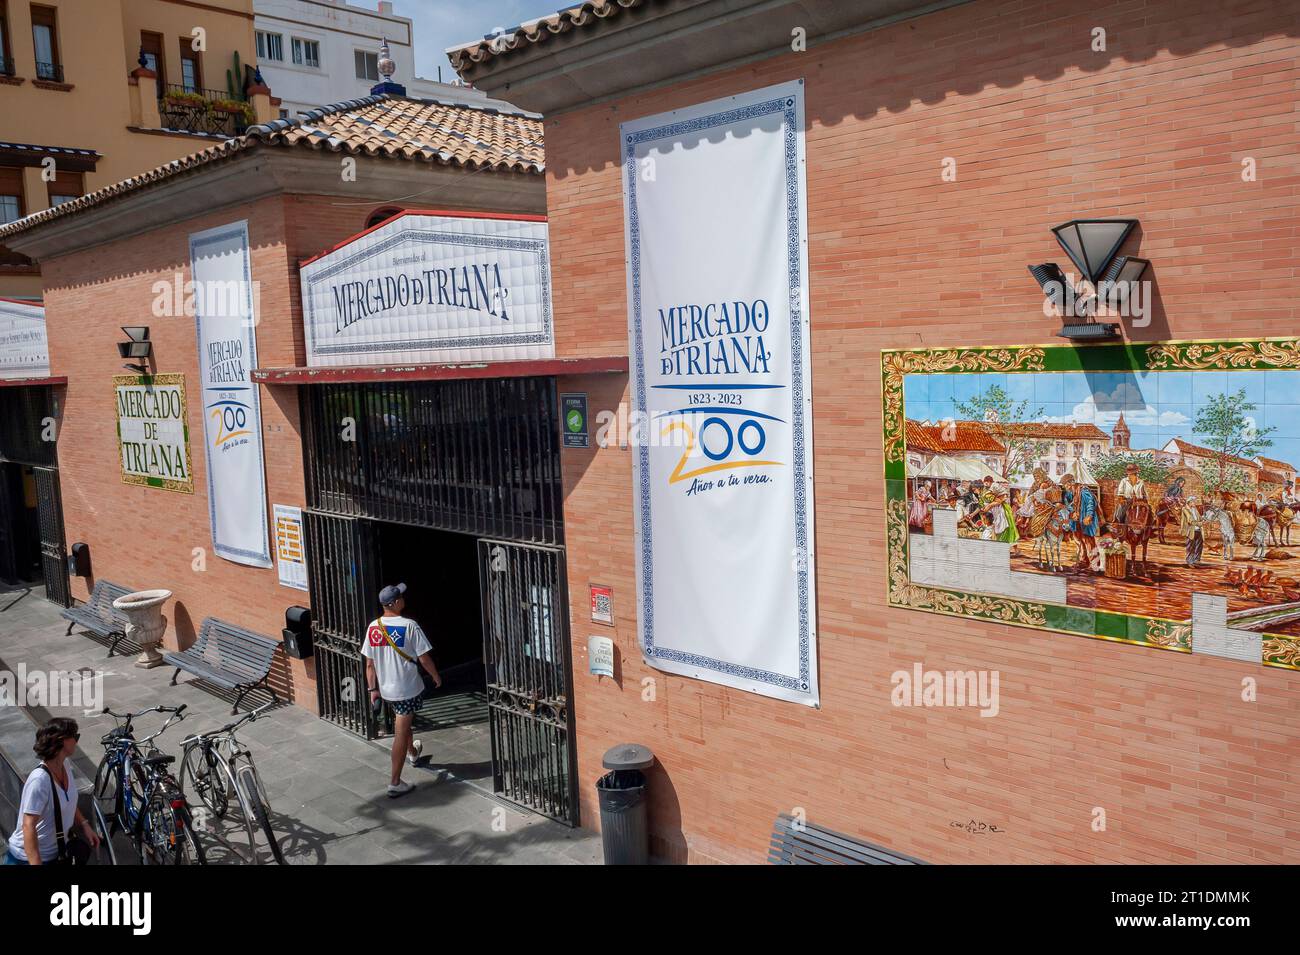 Sevilla, España, Hombre entrando en el edificio, compras, fuera cubierto mercado público español de la comida, 'Mercado De Triana' frente de la tienda, signo Foto de stock